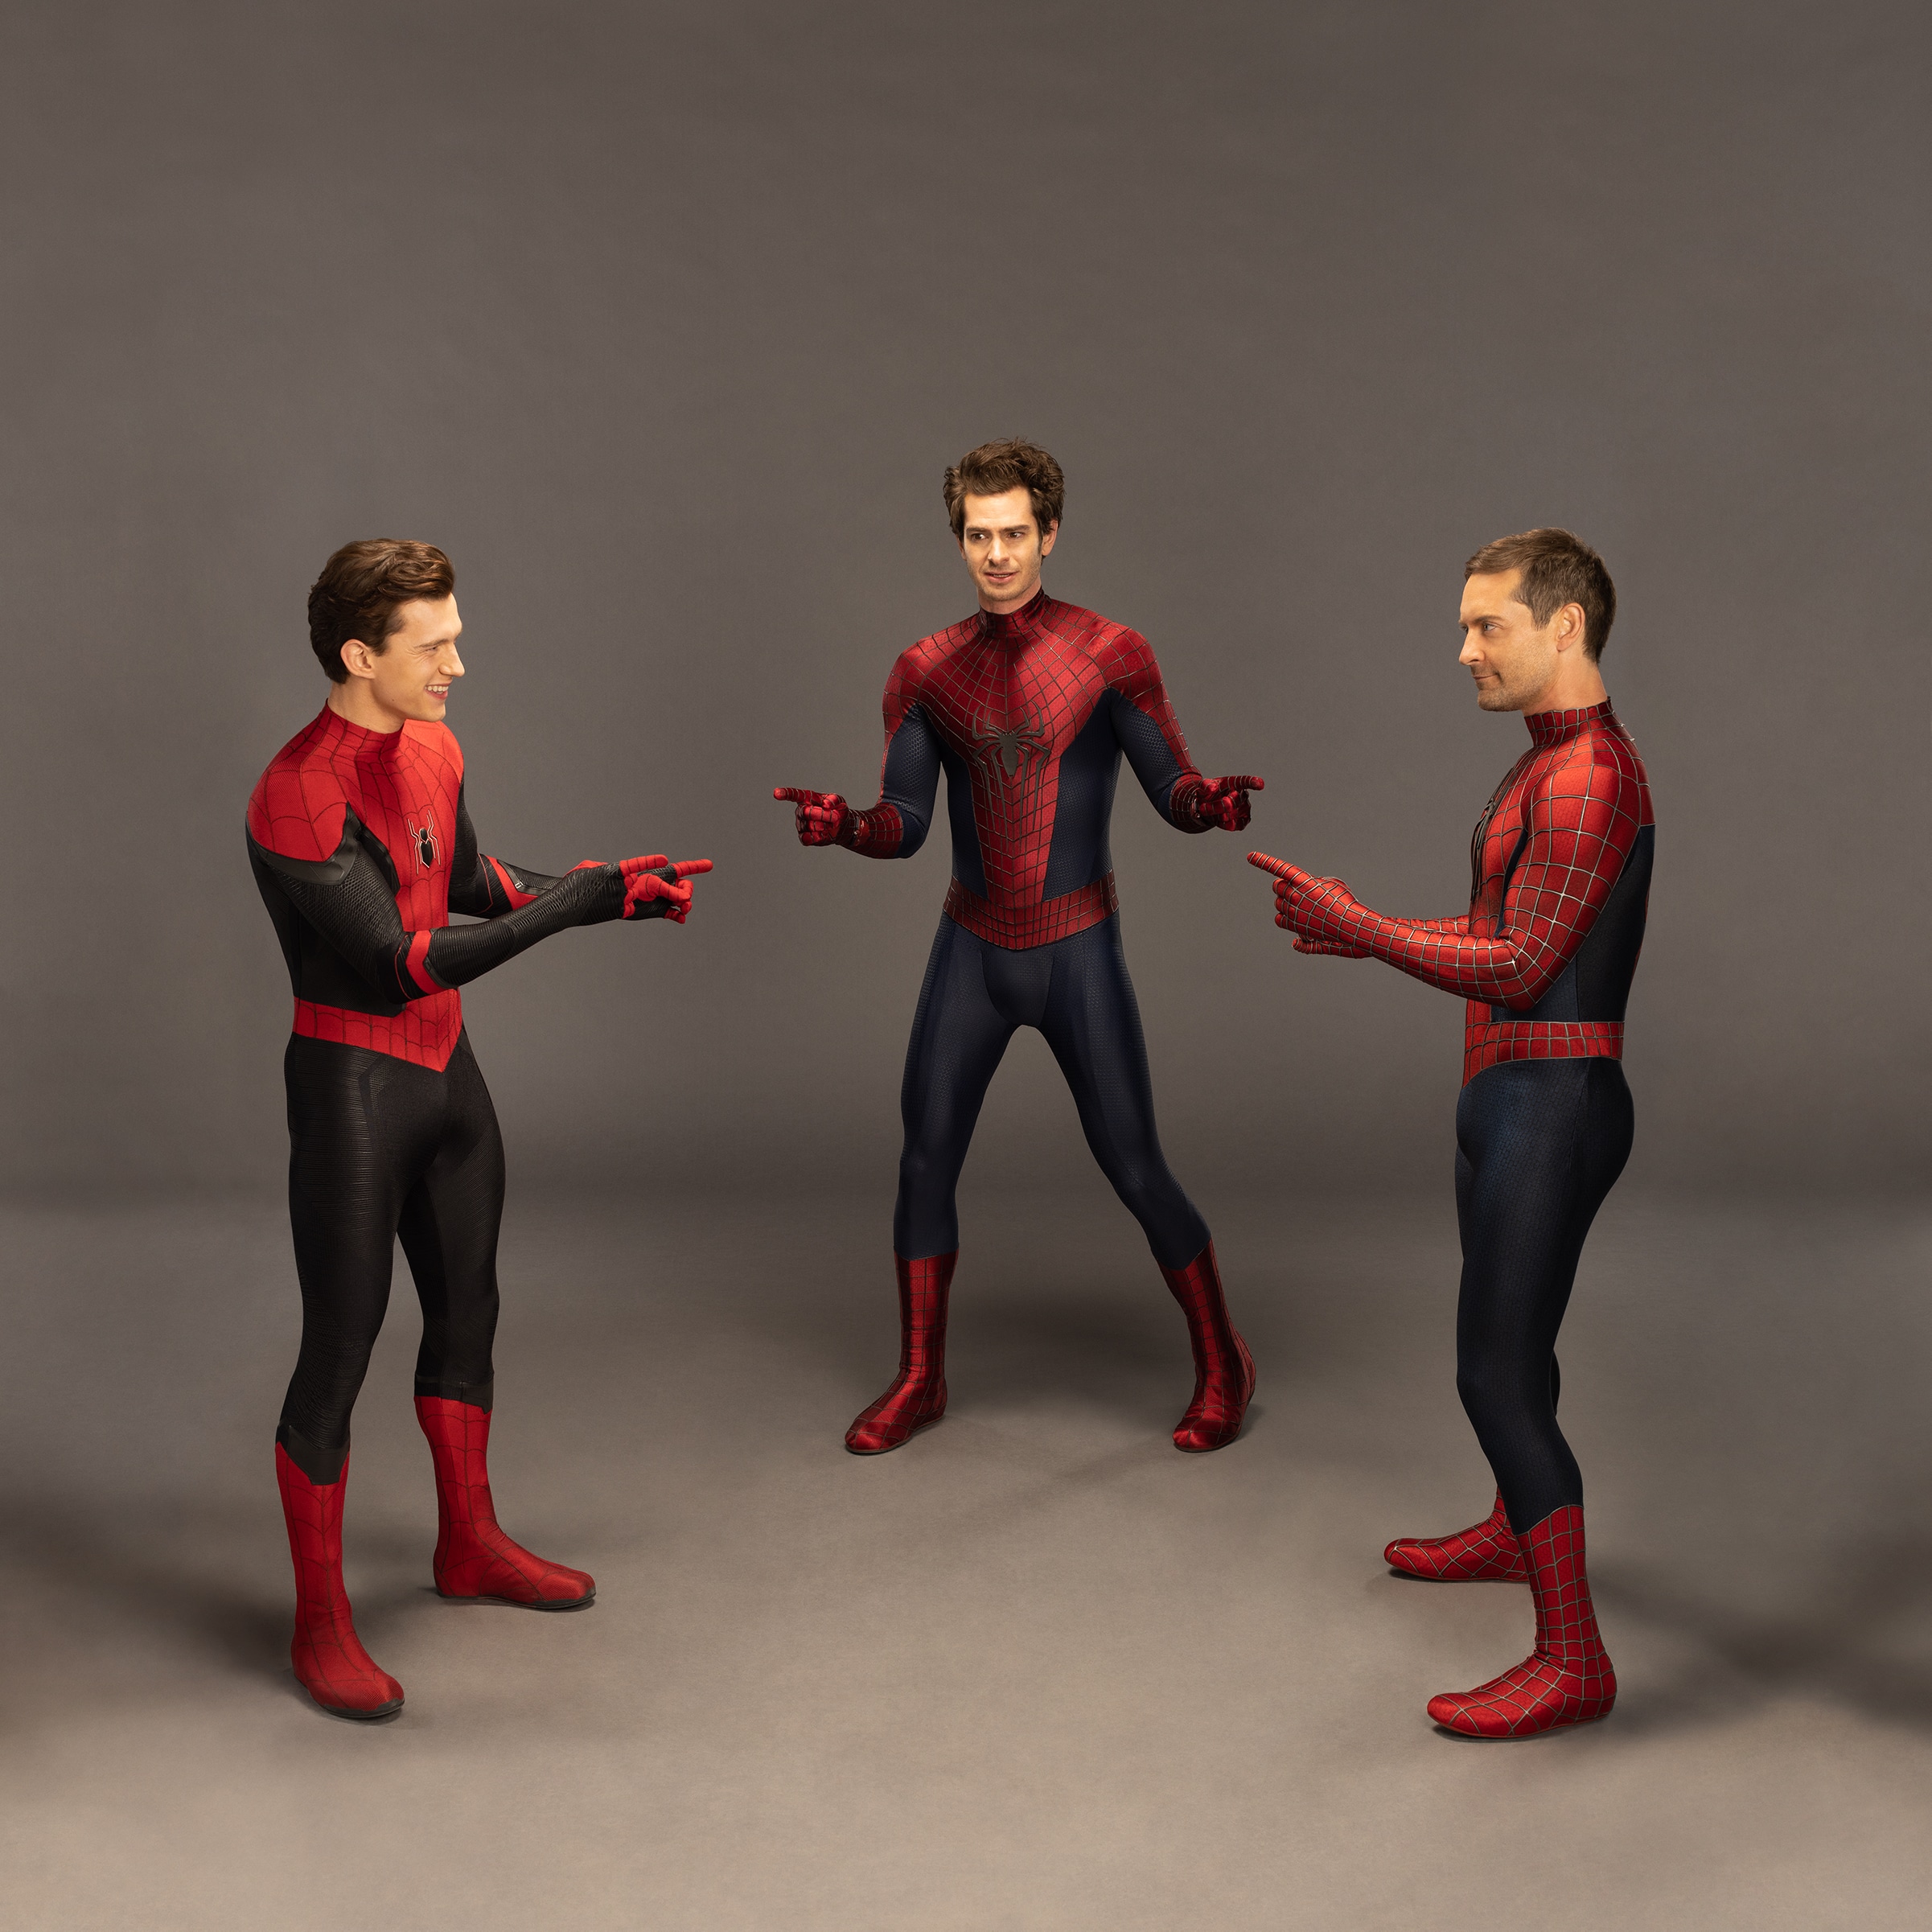 Tom Holland, Andrew Garfield y Tobey MaGuire recrean el mítico meme del multiverso de Spider-Man